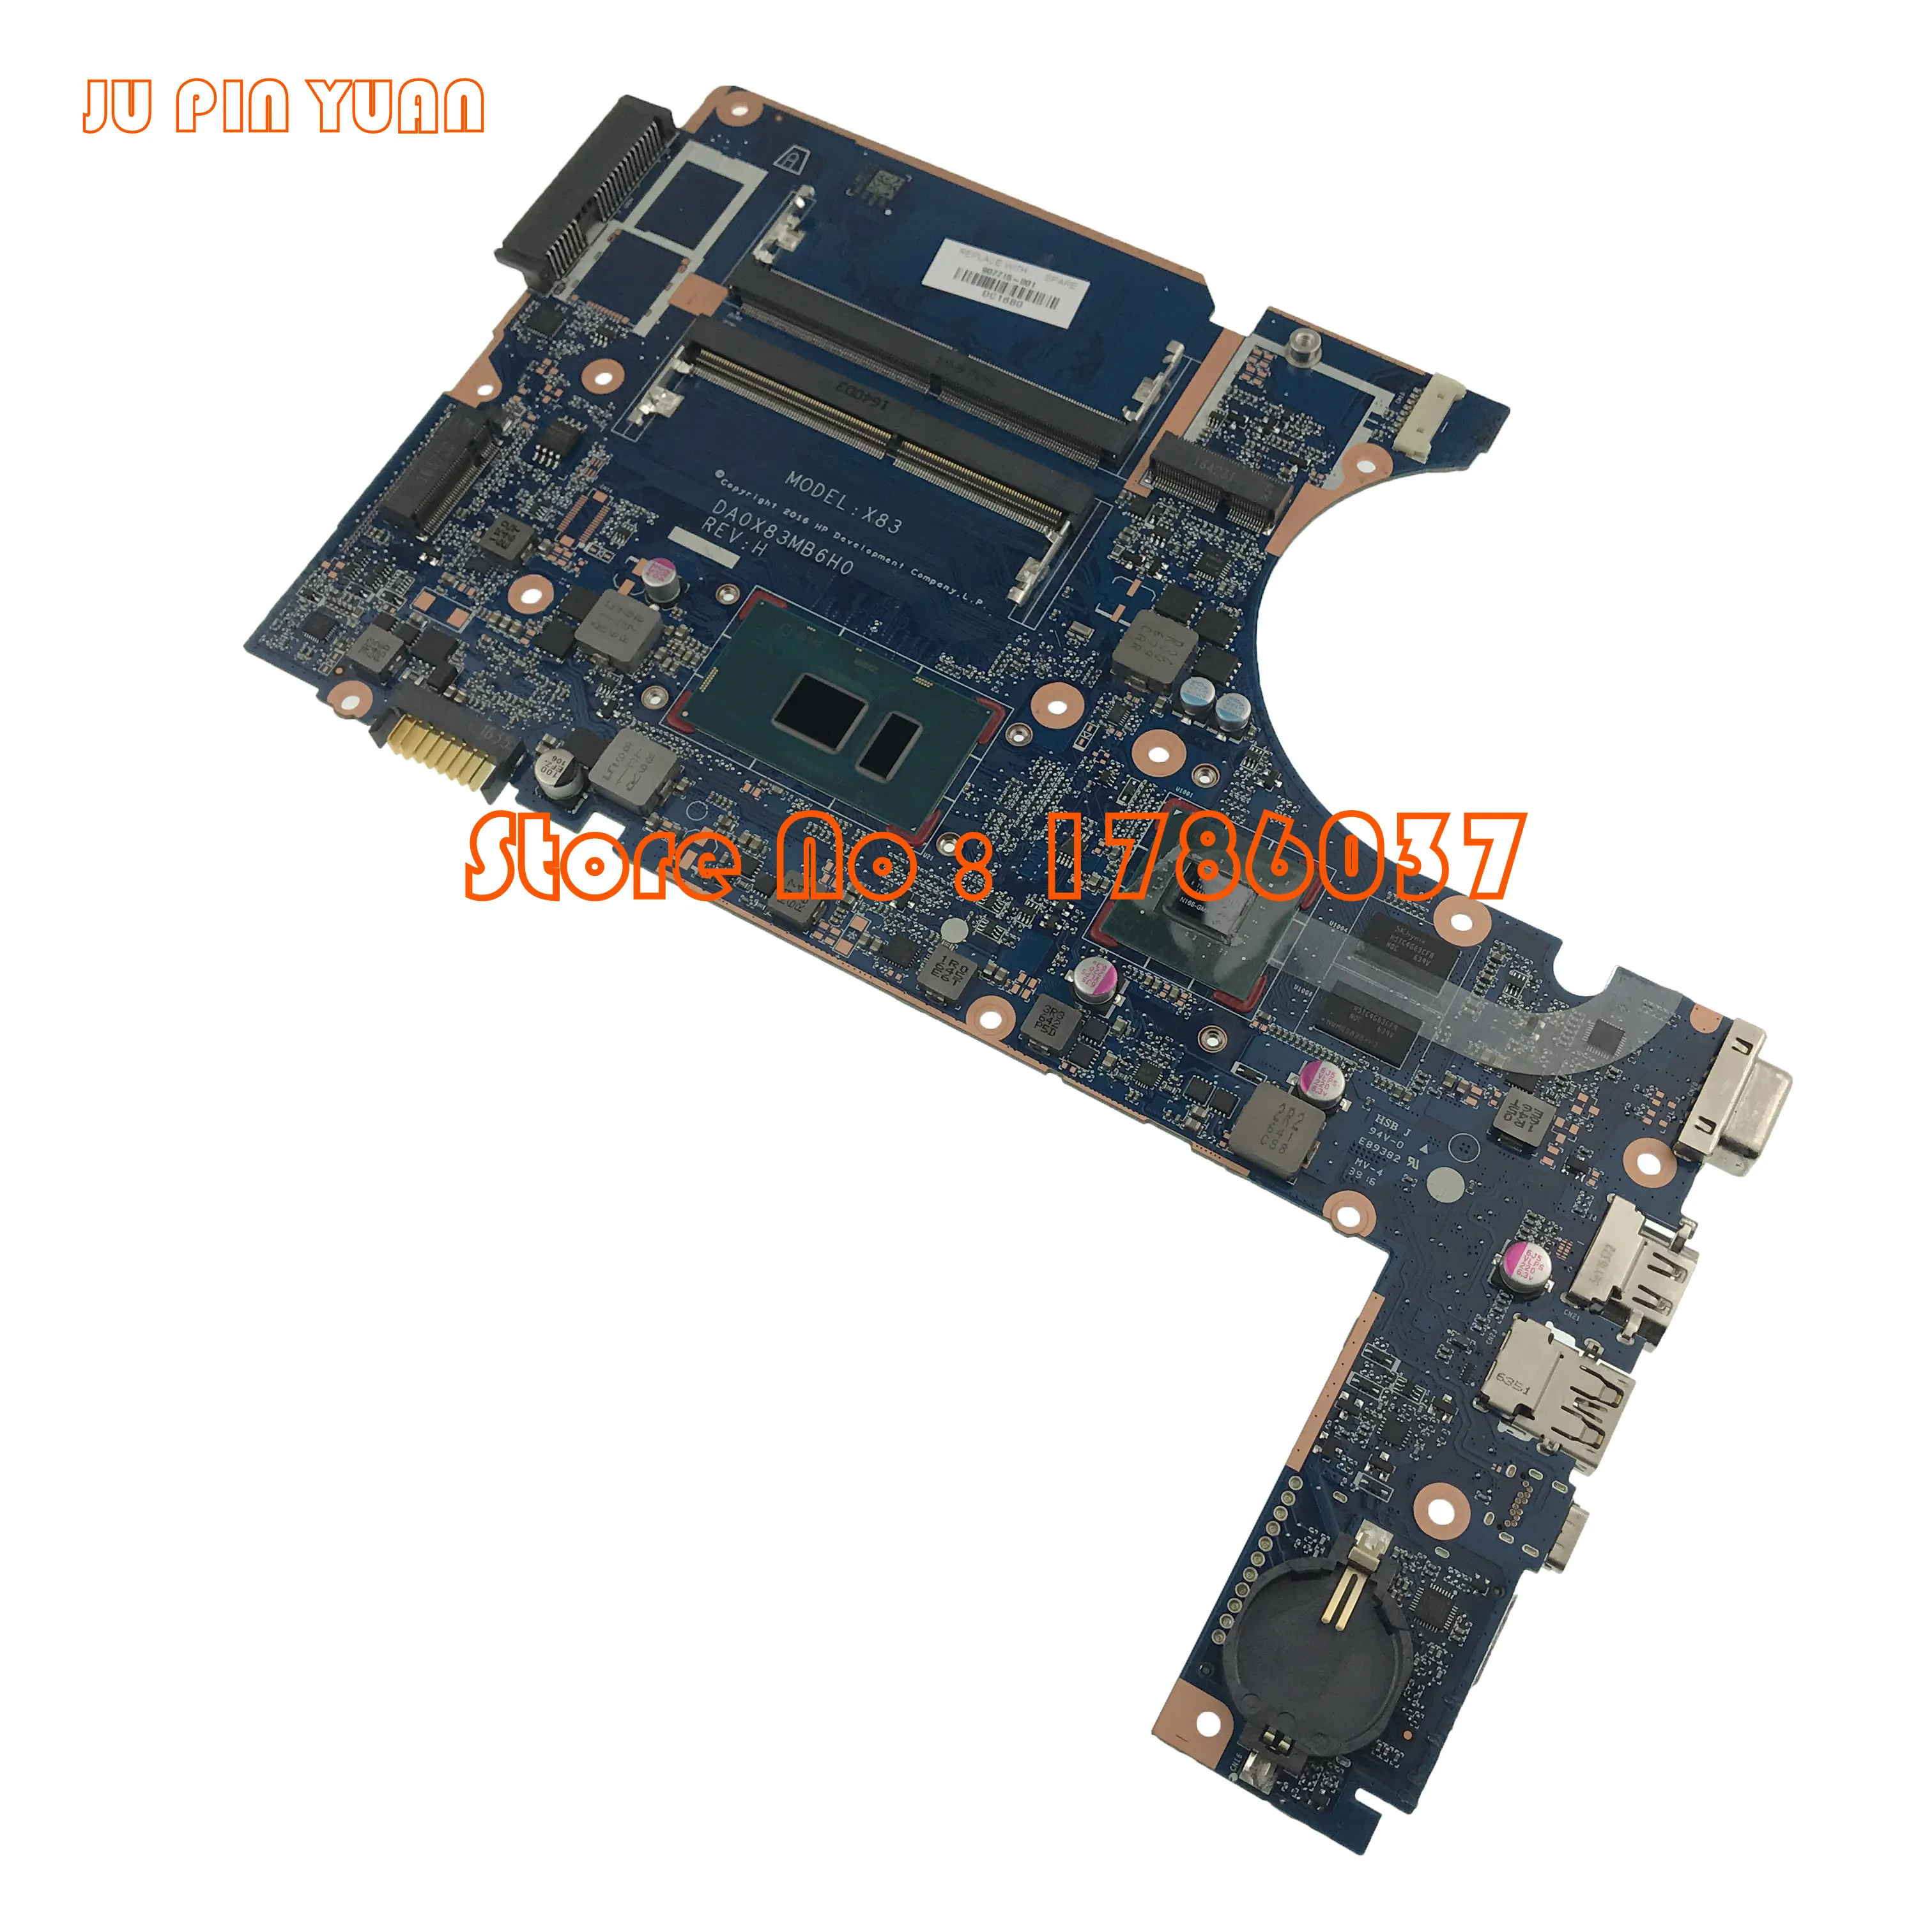 Ju pin yuan для hp ProBook 450 G4 470 G4 Тетрадь 907715-601 907715-001 аккумулятор большой емкости DA0X83MB6H0 материнская плата I7-7500U полностью протестирована